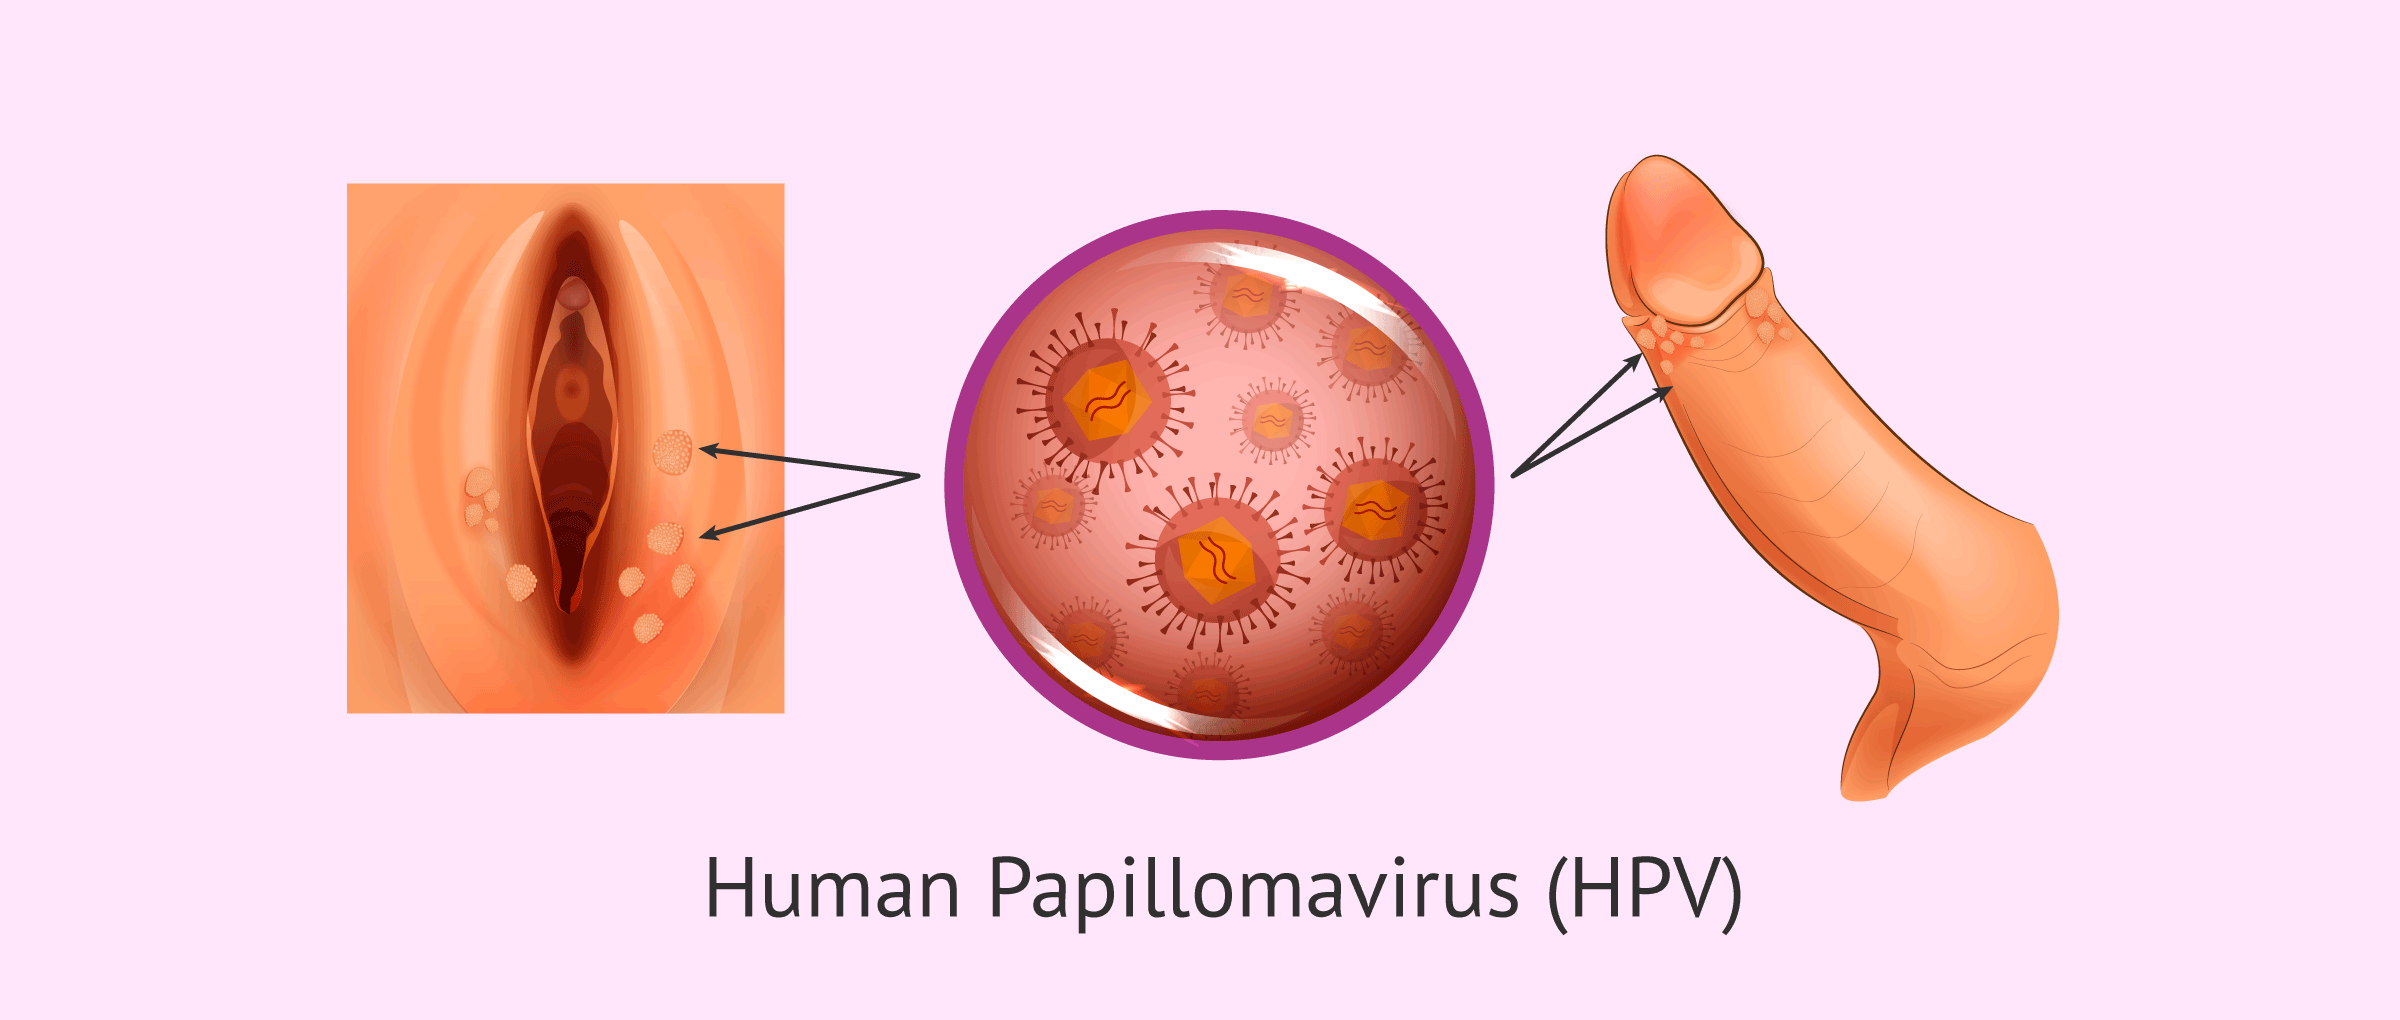 papillomavirus human)